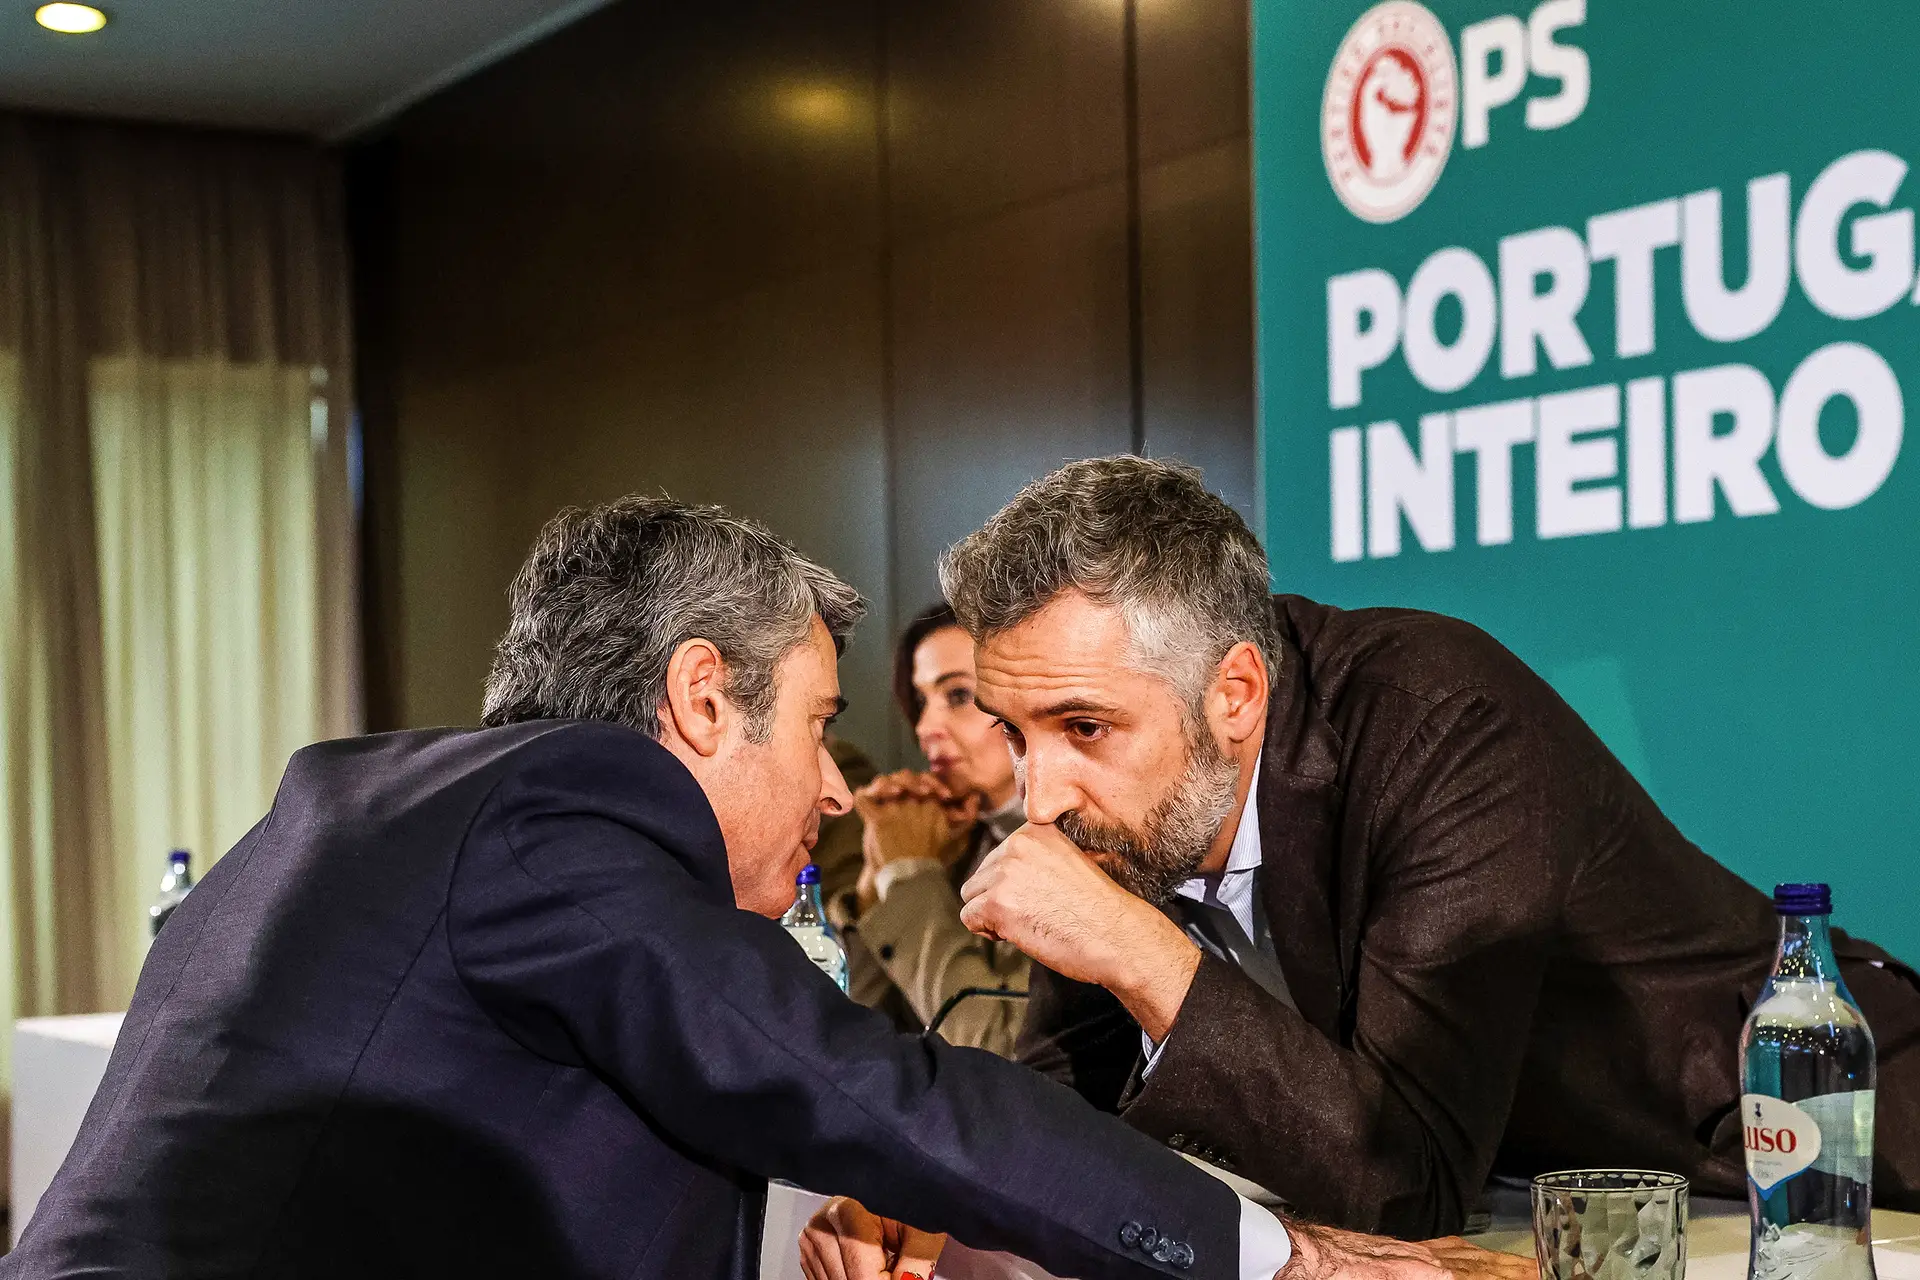 Carneiro confirmado em Braga após negociação tensa, Álvaro Beleza desiste  de ser candidato: A política não se esgota no Parlamento - Expresso